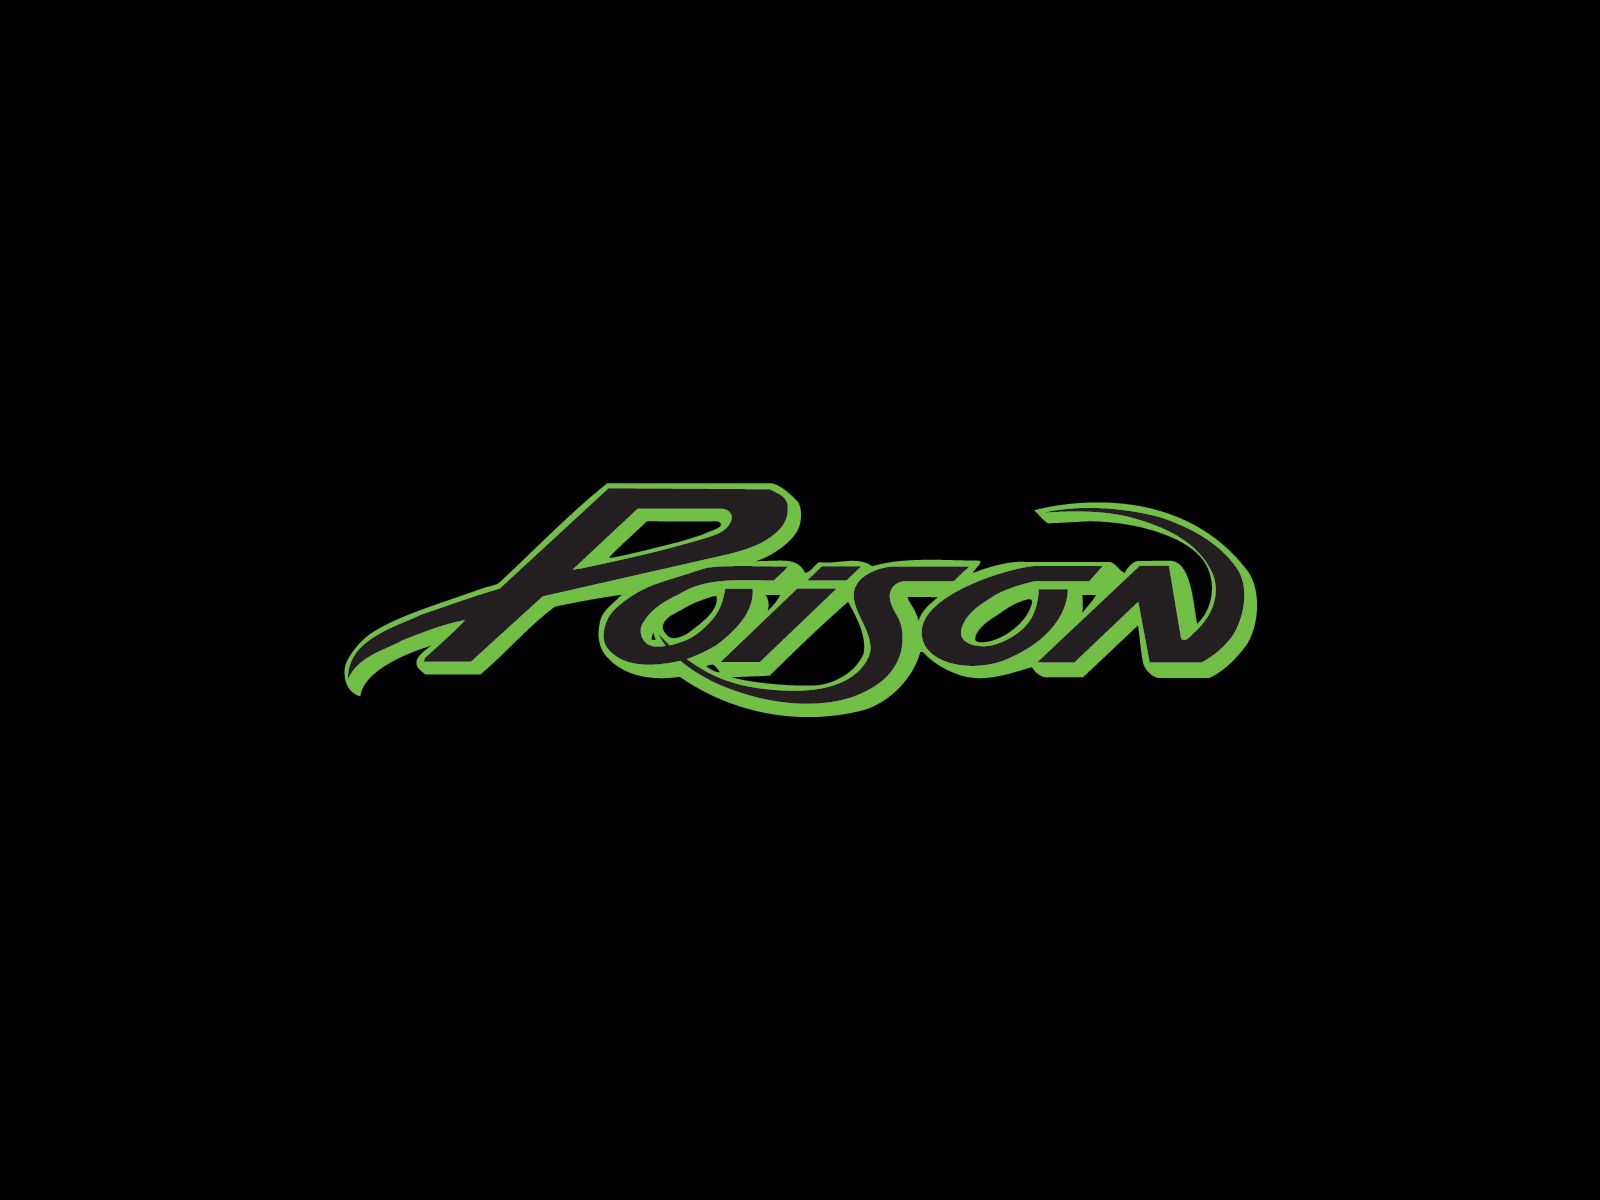 Poison band logo. Metal band logos, Rock band logos, Band logos